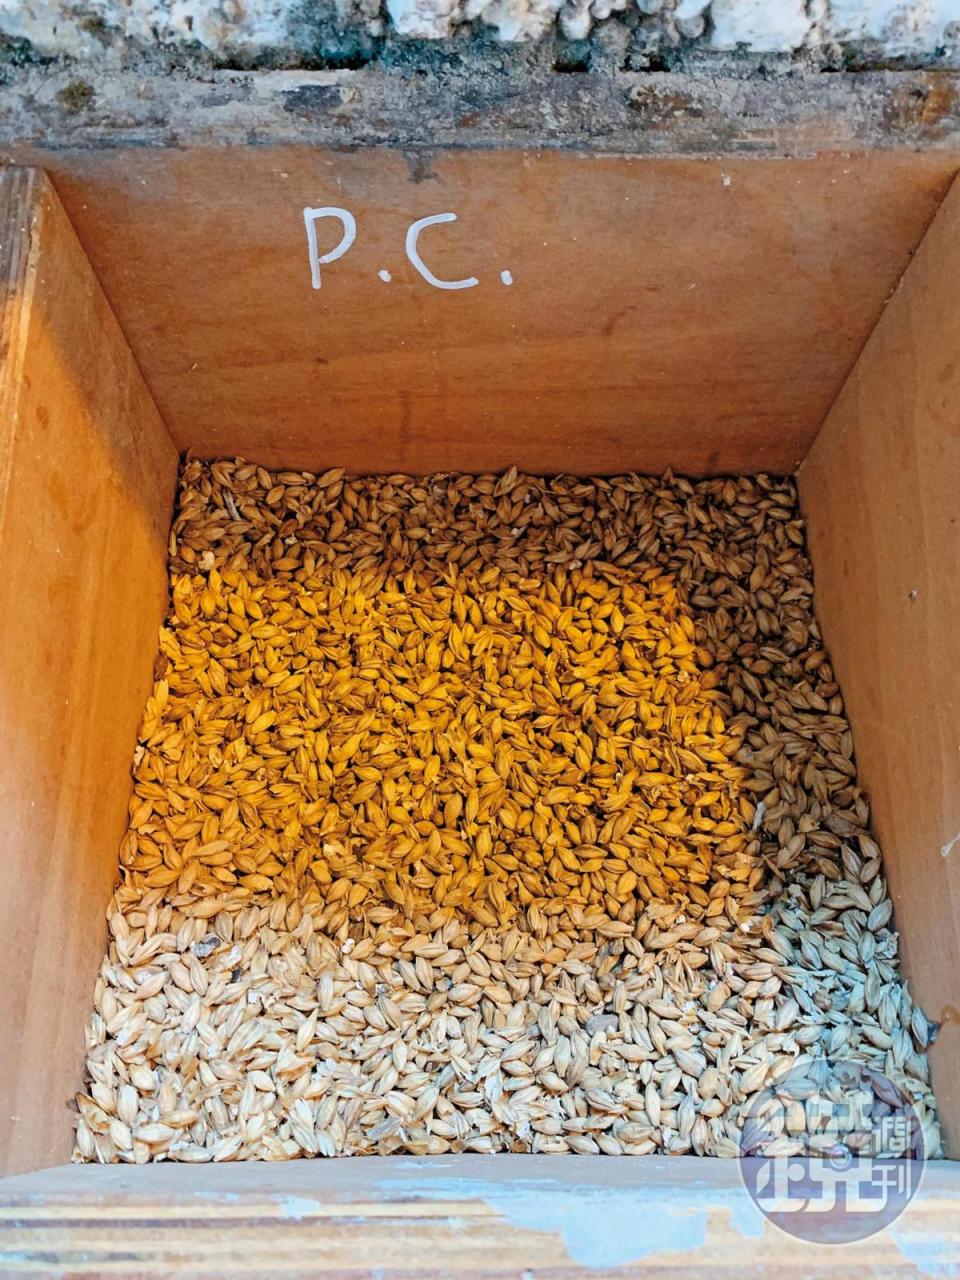 布萊迪一共跟19個農場主人合作，使用16種不同風味（處理）的大麥，十分多元。圖為重泥煤的「夏洛特港」（PC）酒款的麥芽。